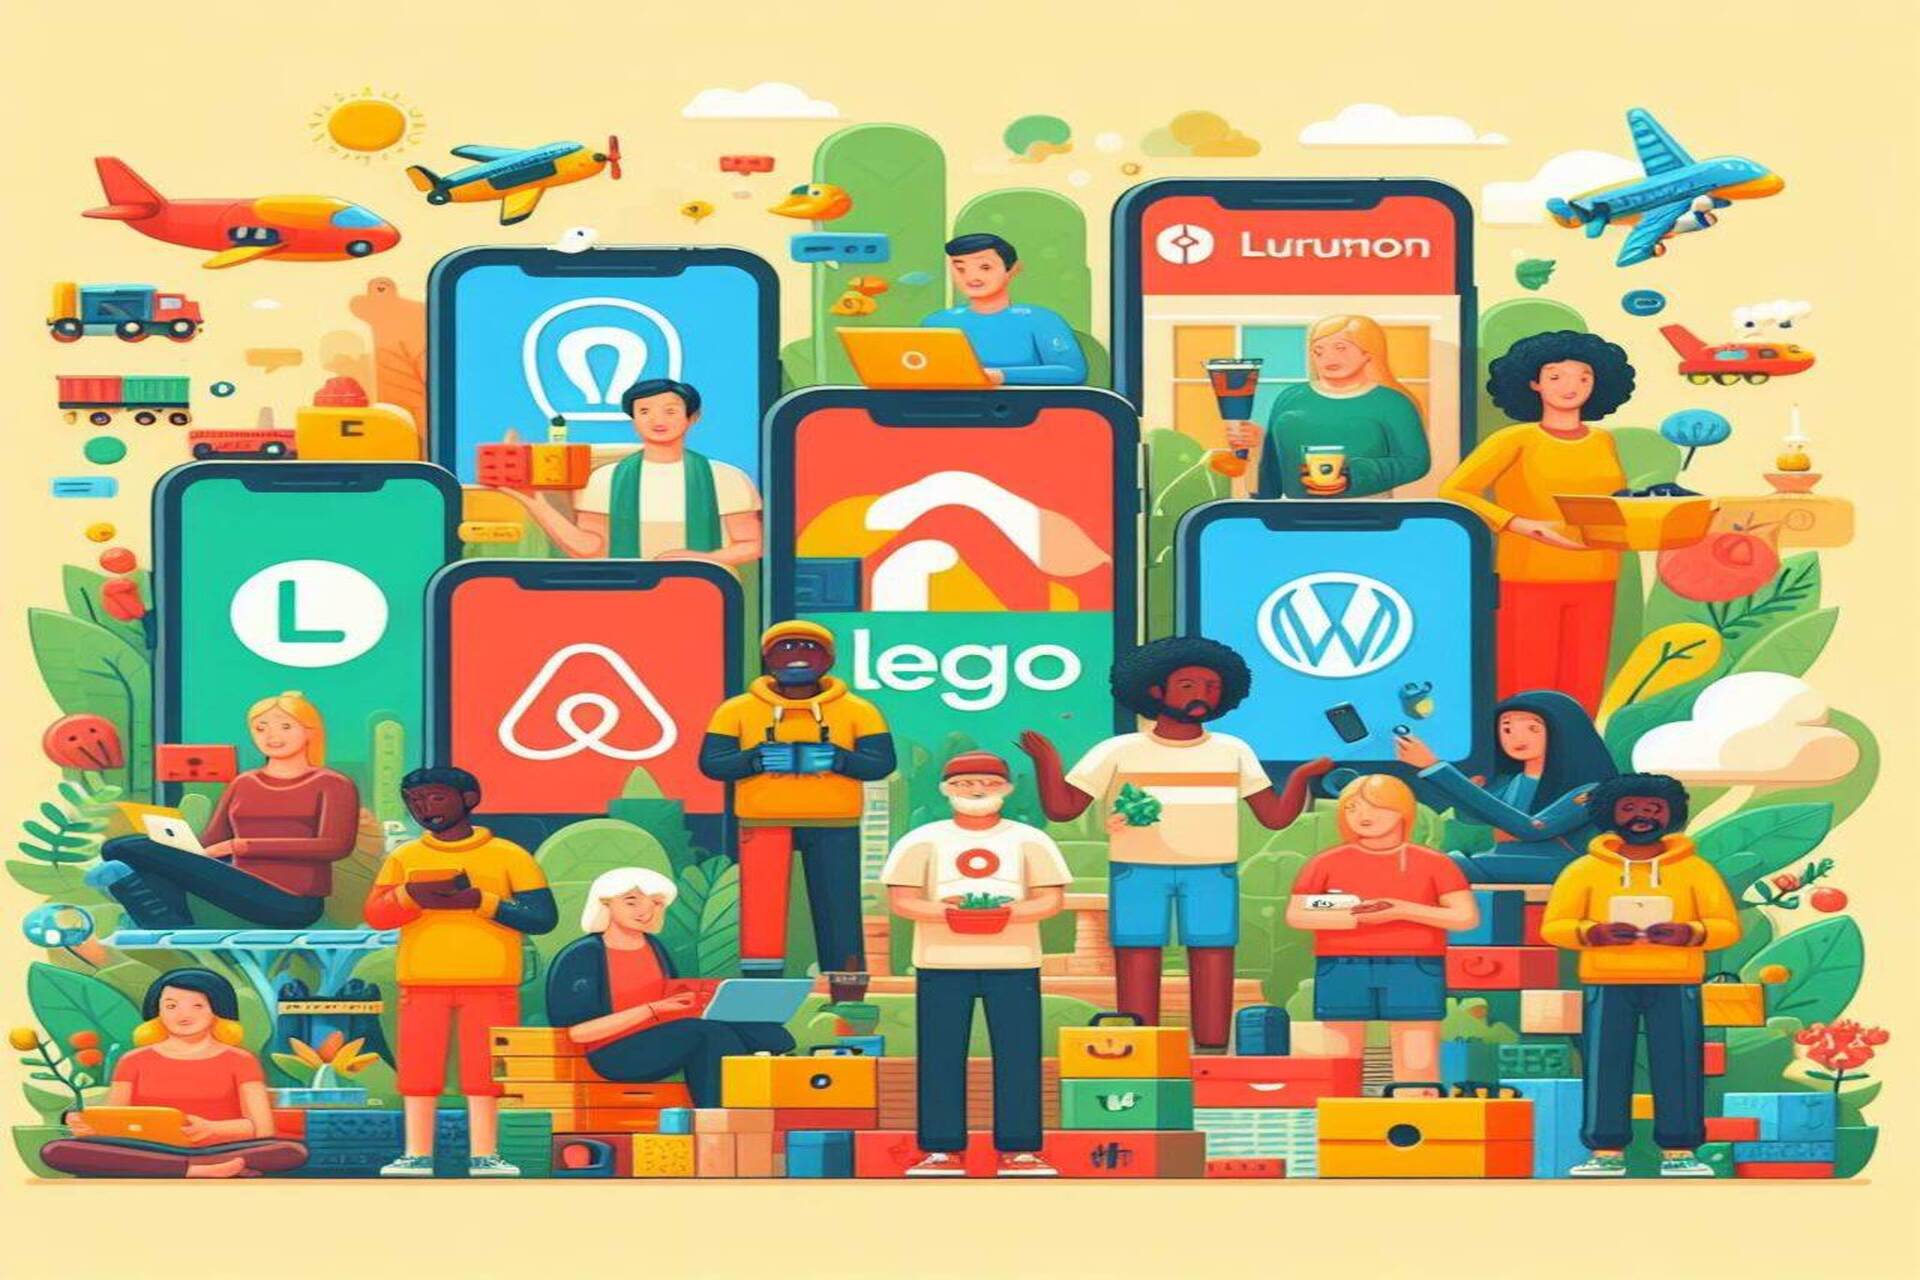 Community & Crowd: Airbnb, Etsy, GitHub, Stack Overflow, Lego Ideas, WordPress, Linux og Lululemon er perfekte eksempler på "community"-apps